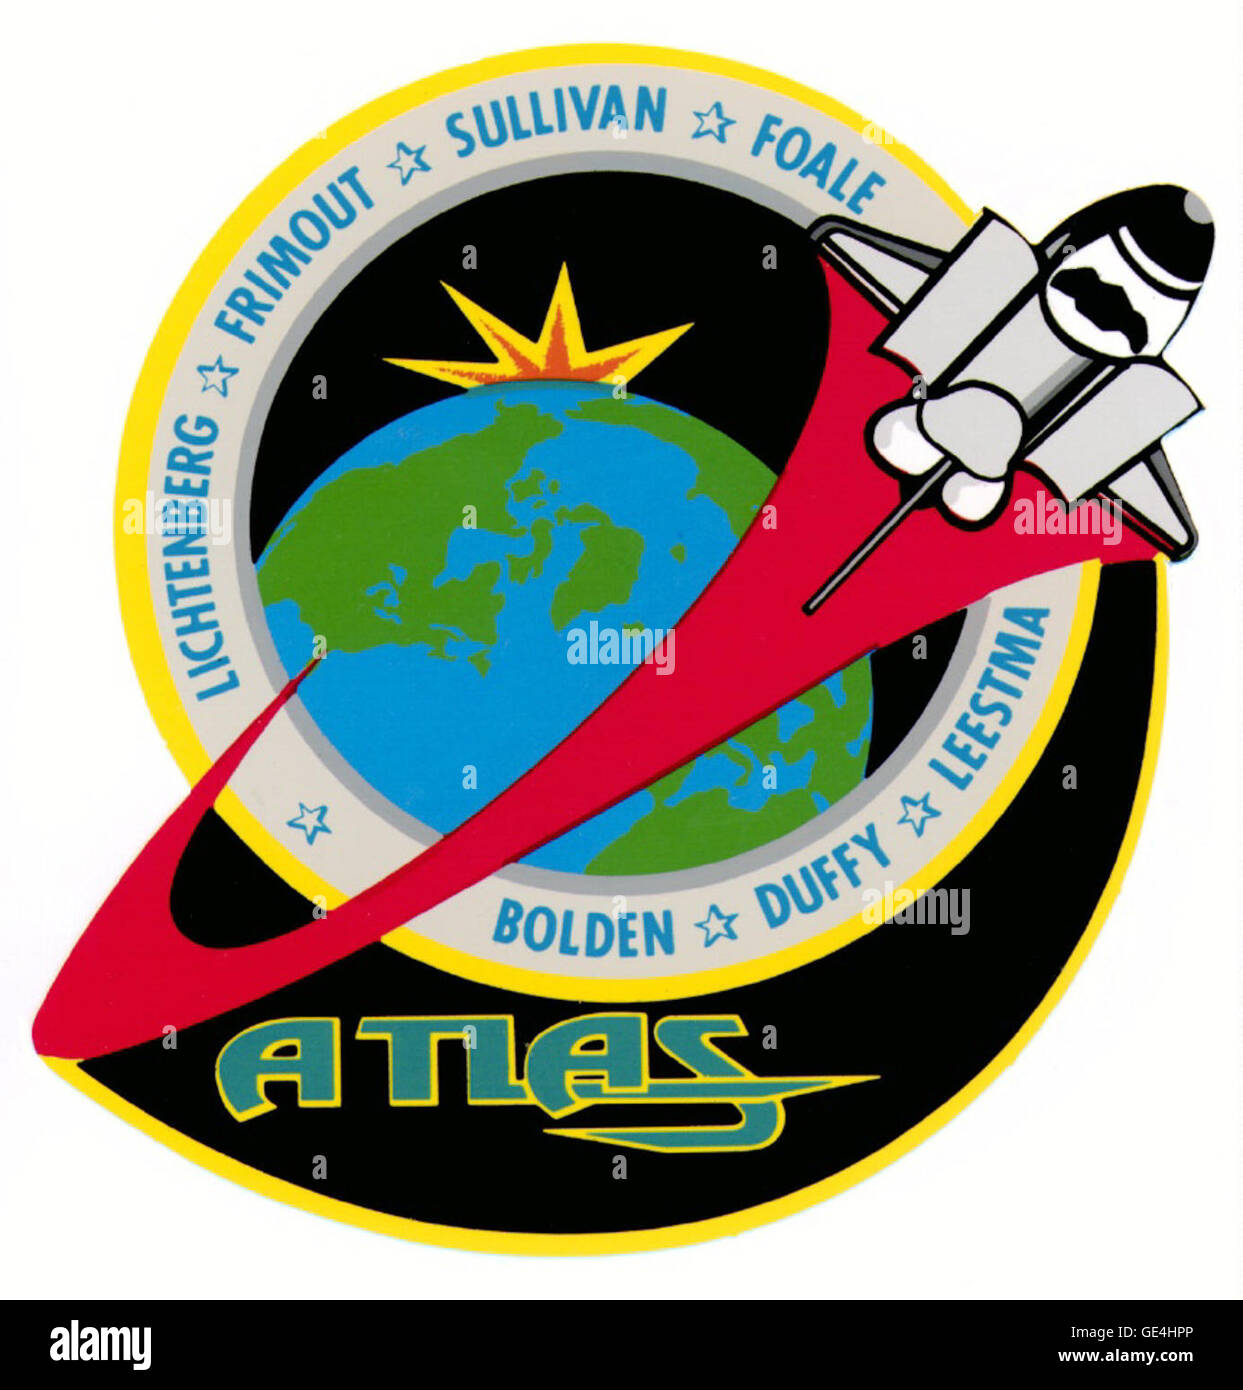 Lancio: 24 marzo 1992, lo sbarco: Aprile 2, 1992 Il Centro Spaziale Kennedy, Fl. Gli astronauti: Charles F. Bolden Jr., Brian Duffy, Kathryn D. Sullivan, David C. Leestma, C. Michael Foale, Byron K. Lichtenberg e Dirk D. Frimout Space Shuttle: Atlantis La missione ha portato il primo laboratorio atmosferica per le applicazioni e la scienza (ATLAS-1) su Spacelab pallet montato nell'orbiter's cargo bay. La non-payload dispiegabile, dotato di 12 strumenti da Stati Uniti, Francia, Germania, Belgio, Svizzera, Paesi Bassi e Giappone, condotti studi in chimica atmosferica, radiazione solare, spazio plas Foto Stock